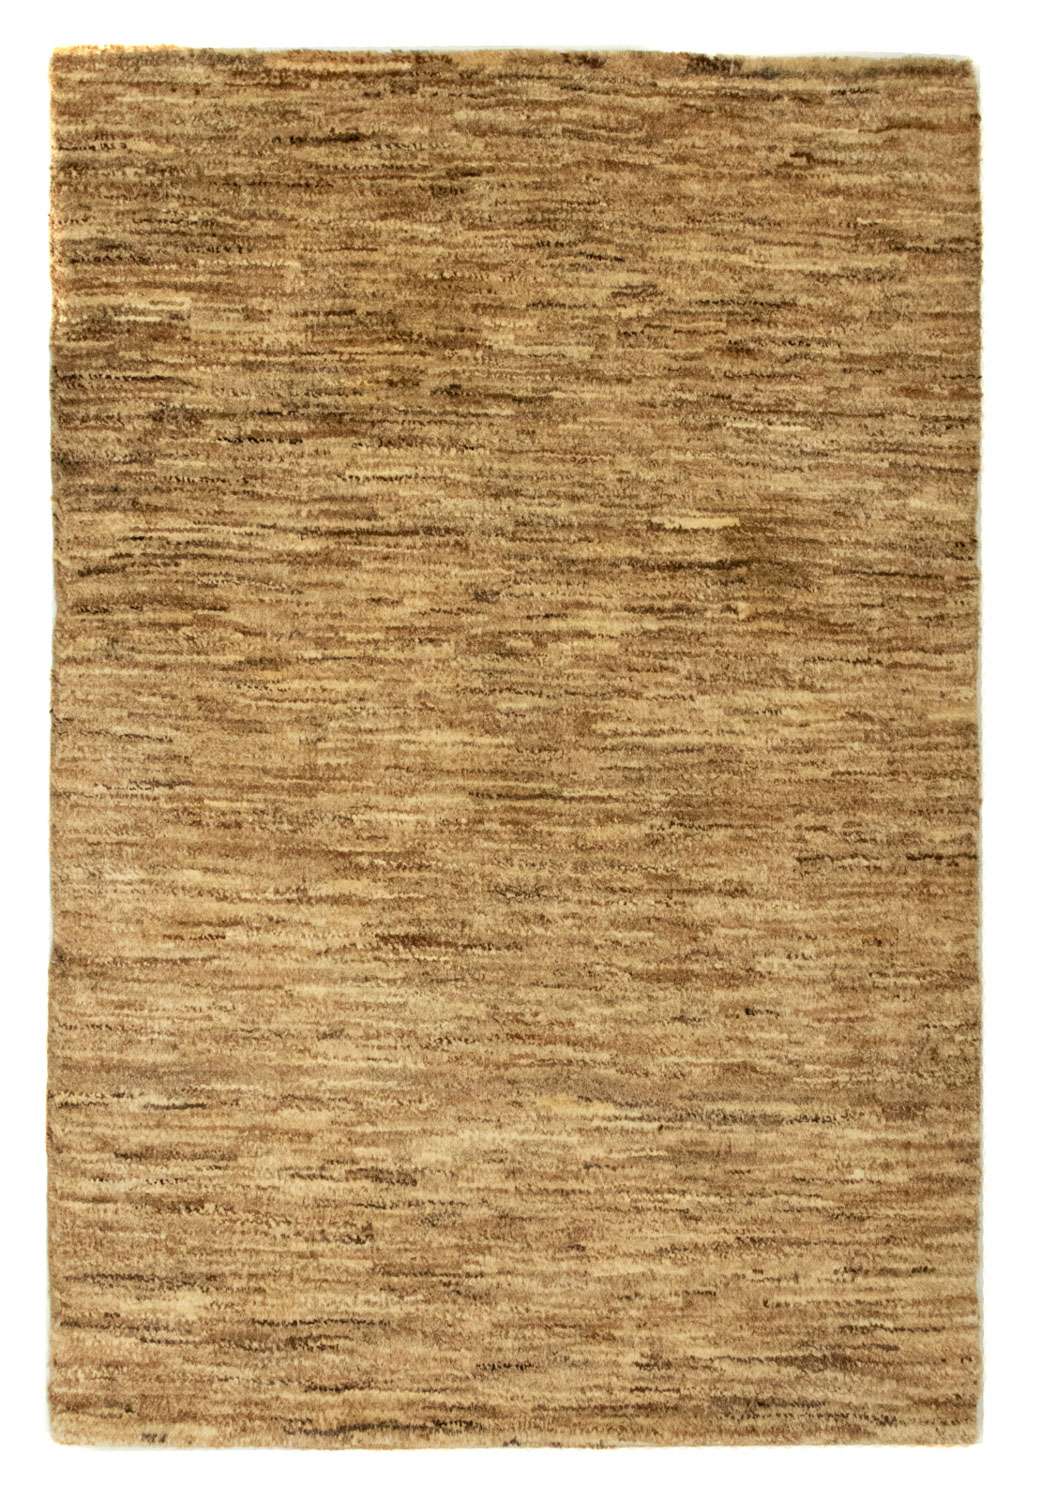 Tapete Gabbeh - Indus - 92 x 61 cm - bege